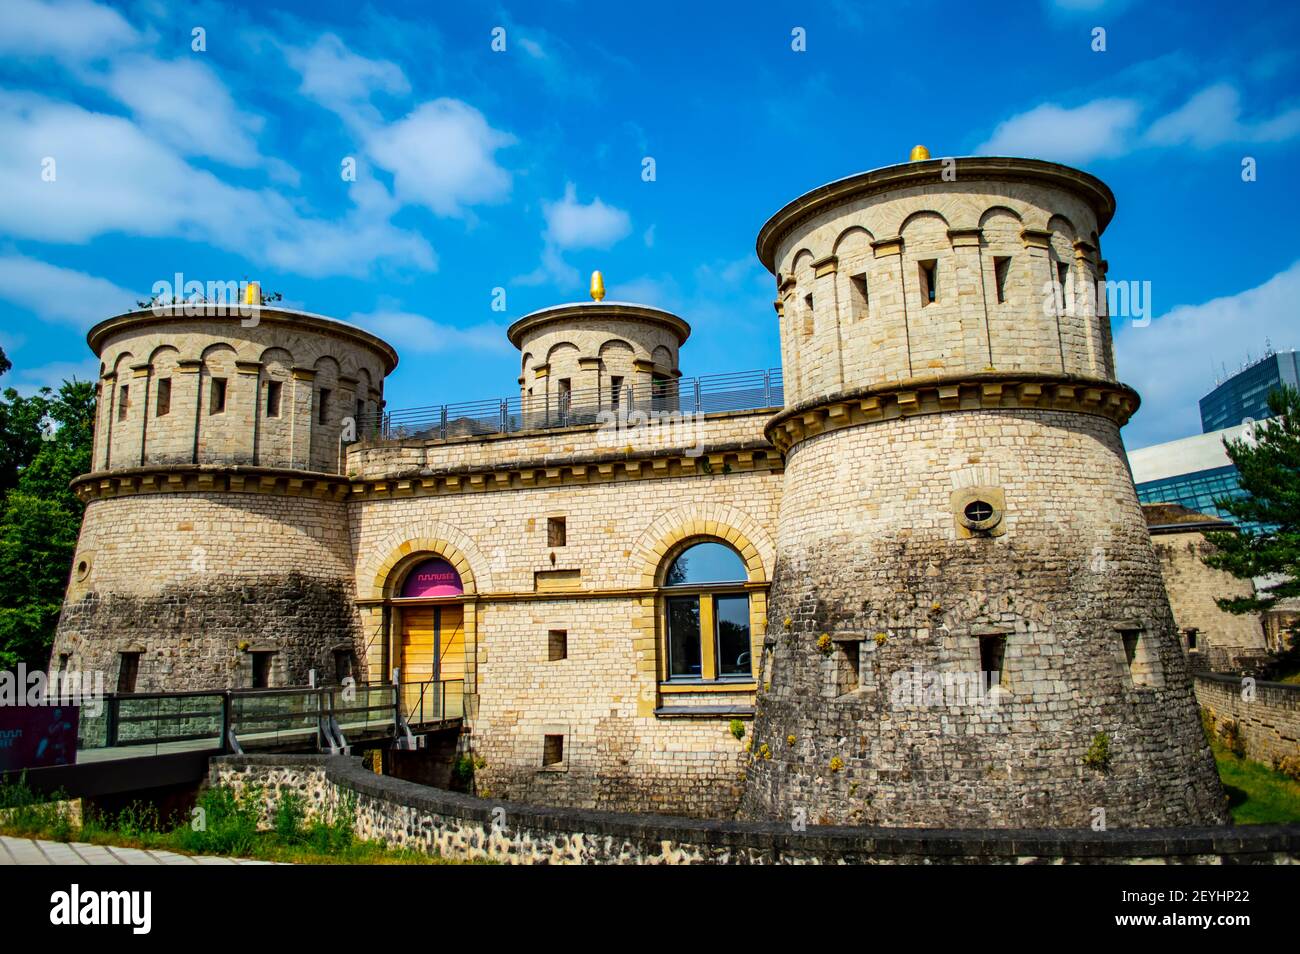 Luxemburg-Stadt, Luxemburg - 15. Juli 2019: Festung Thungen auch bekannt als drei Eicheln Festung in Luxemburg-Stadt an einem sonnigen Sommertag Stockfoto